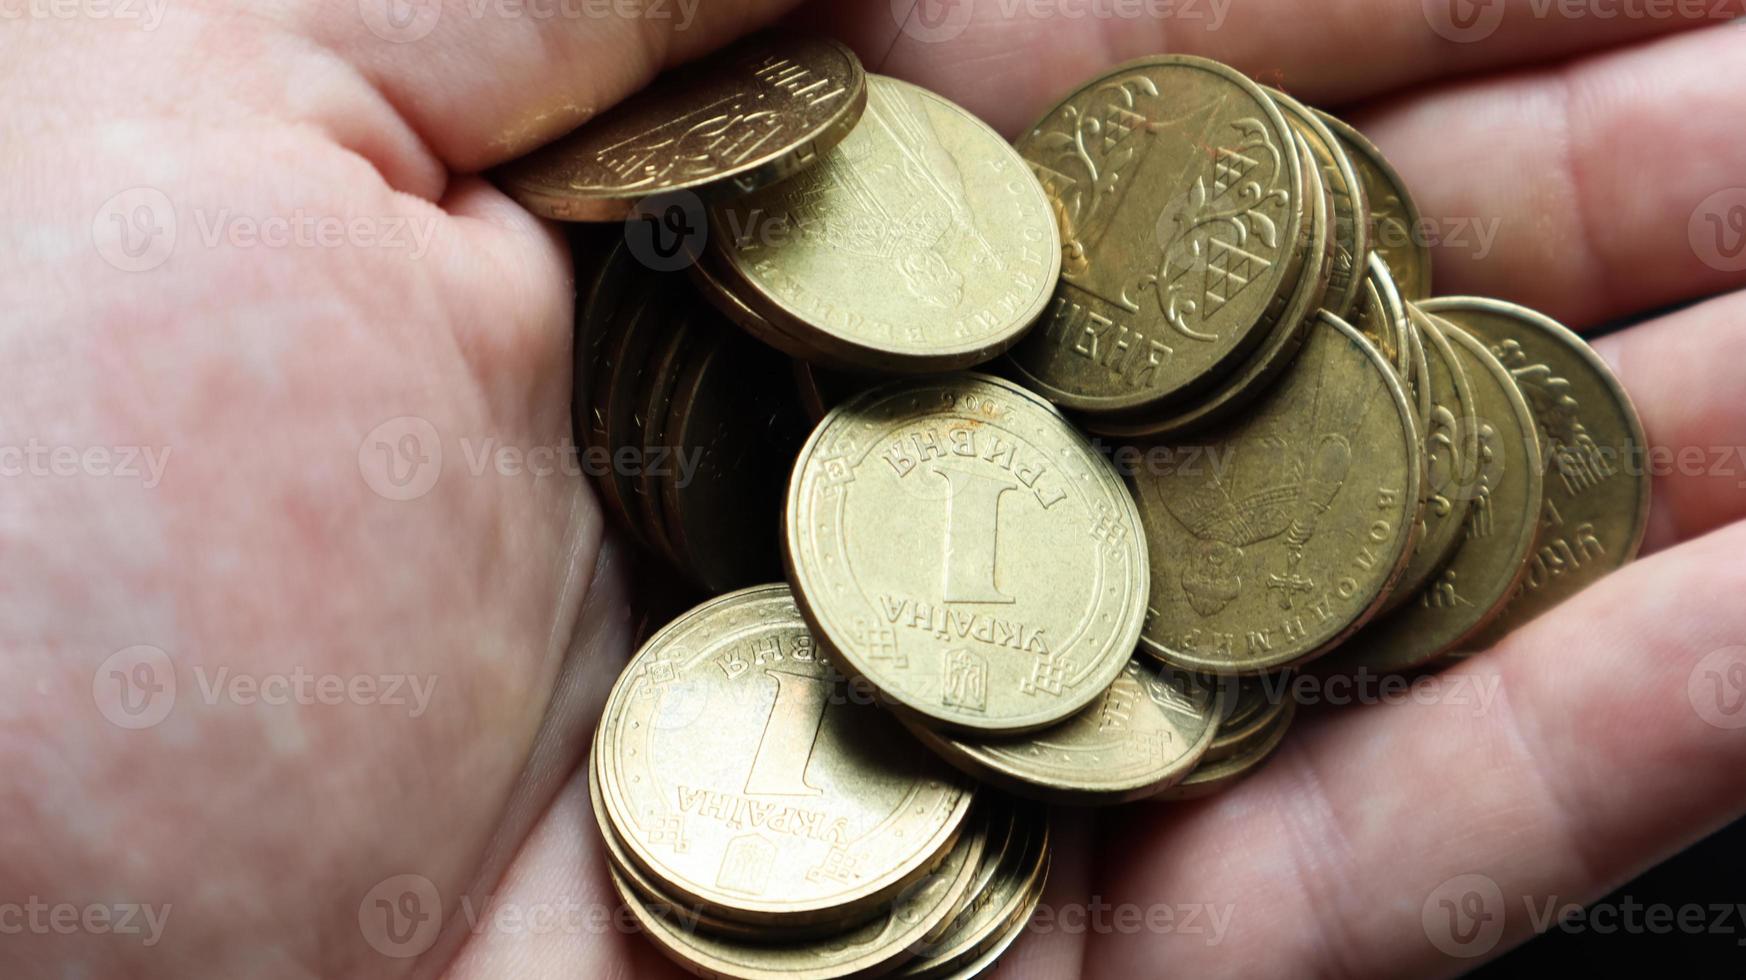 monedas de metal ucranianas con un valor nominal de 1 hryvnia en la palma de una mano masculina. un puñado o pila de monedas en las manos. concepto de jubilación, ahorro y riqueza, crédito e hipoteca, pobreza. foto